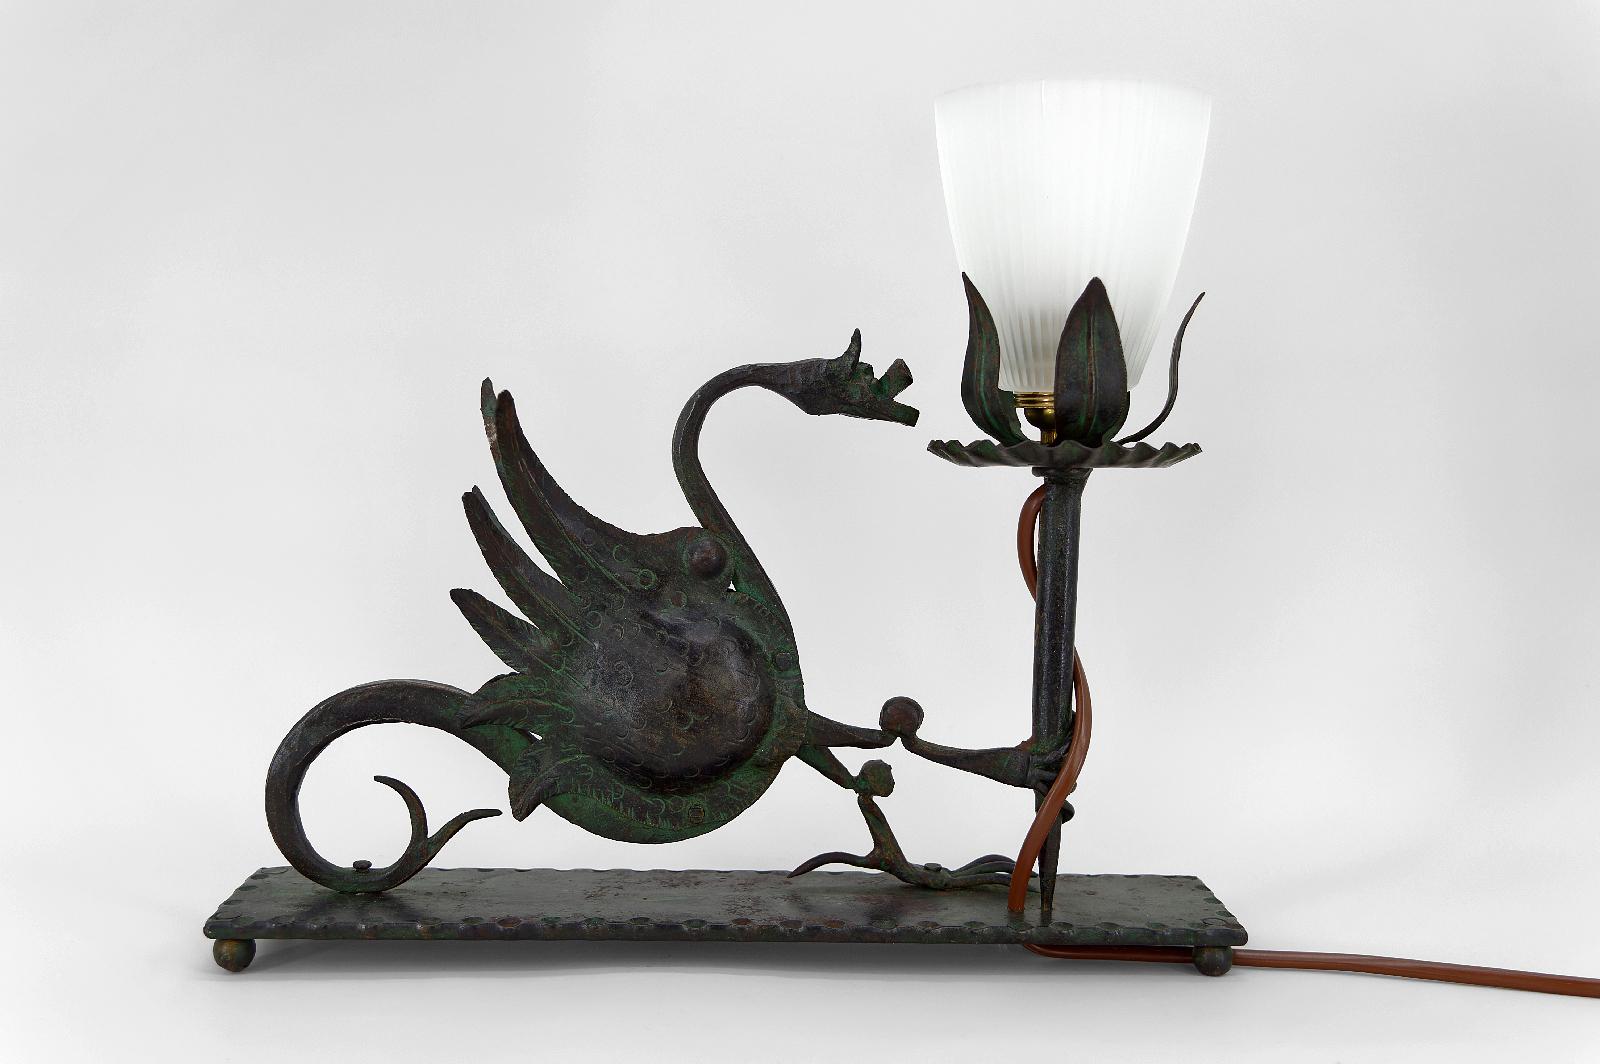 Elegante Tisch-/Schreibtischlampe aus Schmiedeeisen, die einen geflügelten Drachen darstellt, der eine Fackel/Taschenlampe hält. 

Schöne Metallarbeit: Thema gut gemacht, schöne Grünspan-Patina.

Neogotik/Gotik-Revival/Jugendstil, Italien, um